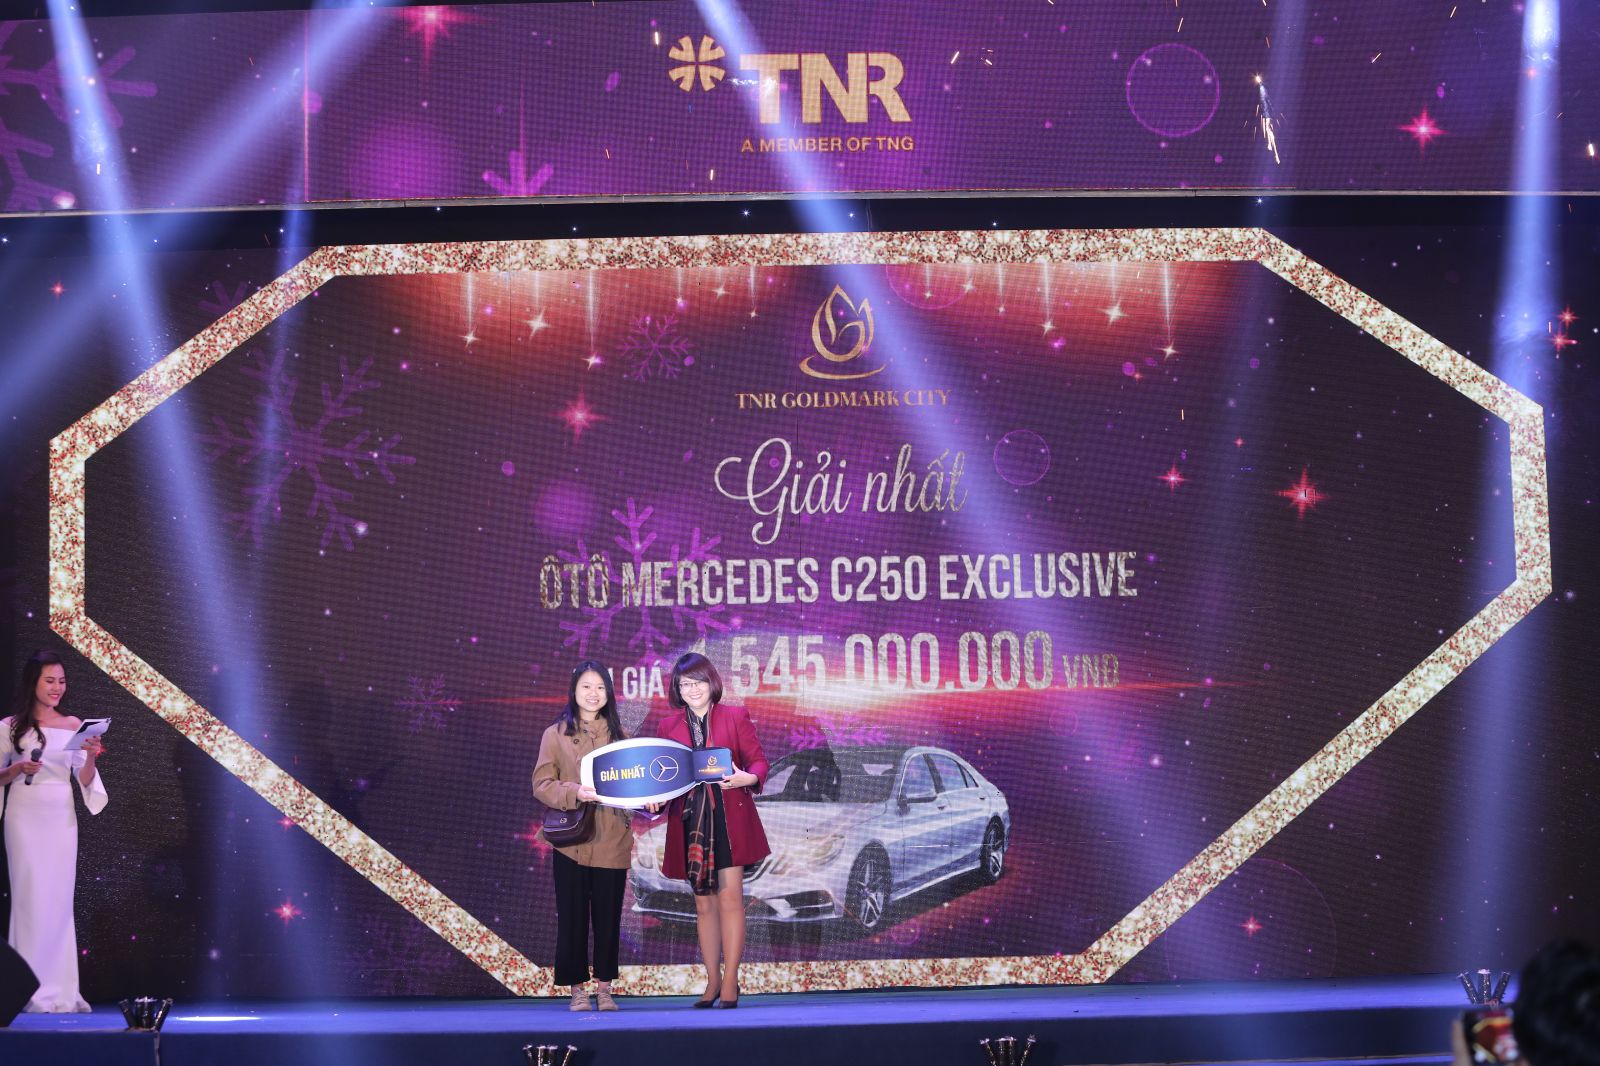 Chị Bùi Diệu Linh (Đông Triều, Quảng Ninh) là khách hàng may mắn nhận được giải nhất là một chiếc xe Mercedes trị giá 1.545.000.000 VNĐ.